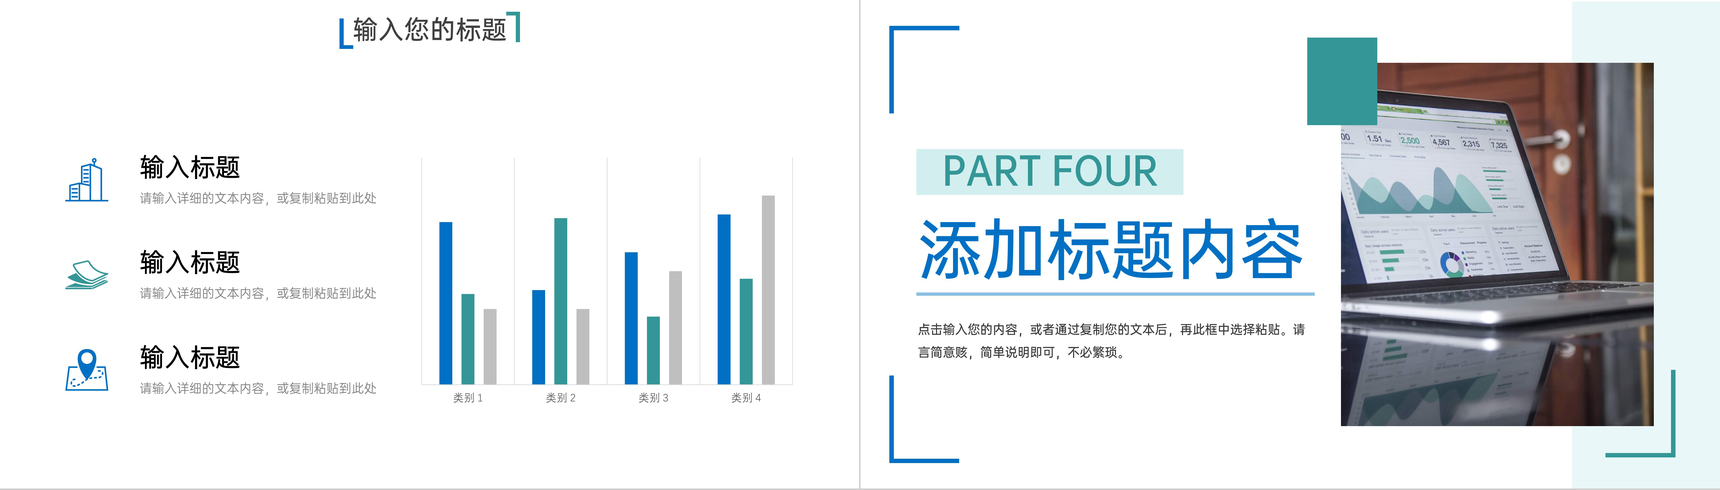 蓝绿撞色产品数据复盘总结企业战略分析PPT模板-8